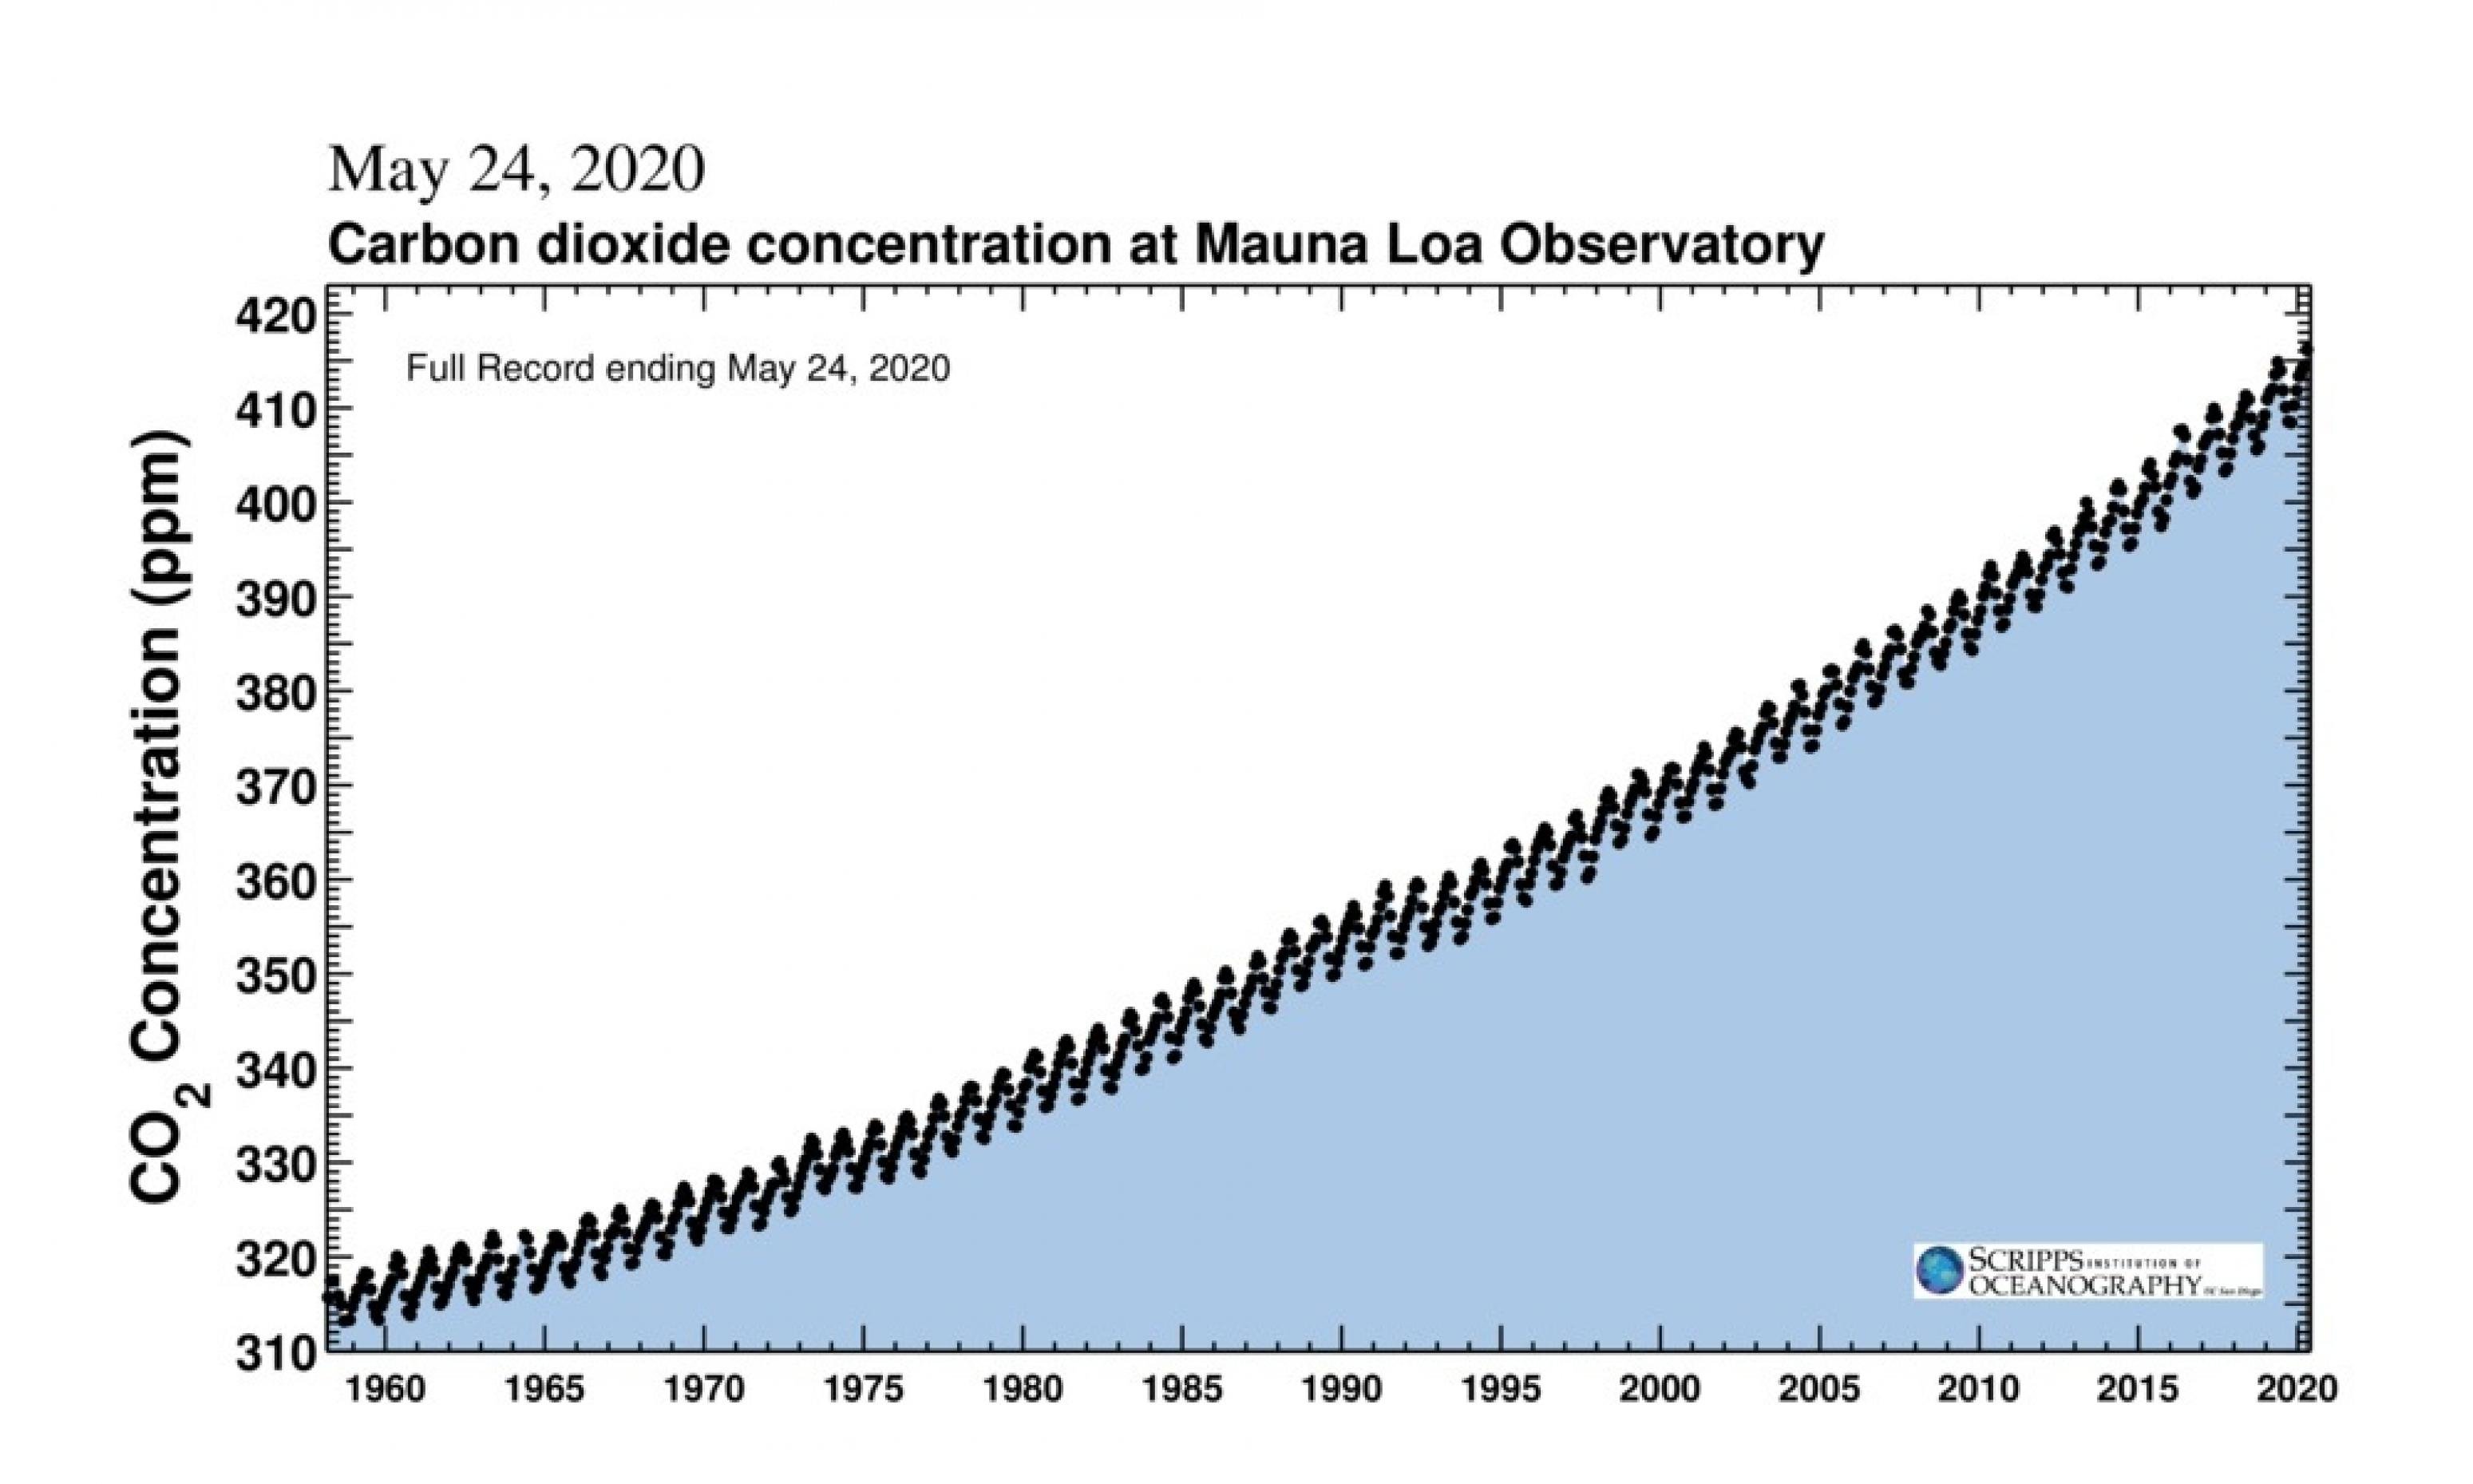 Die Grafik stellt eine deutliche Zunahme der Kohlendioxid-Konzentration in der Atmosphäre dar. Zu sehen ist auch die jahreszeitliche Schwankung, die durch ein Zickzack zum Ausdruck kommt.